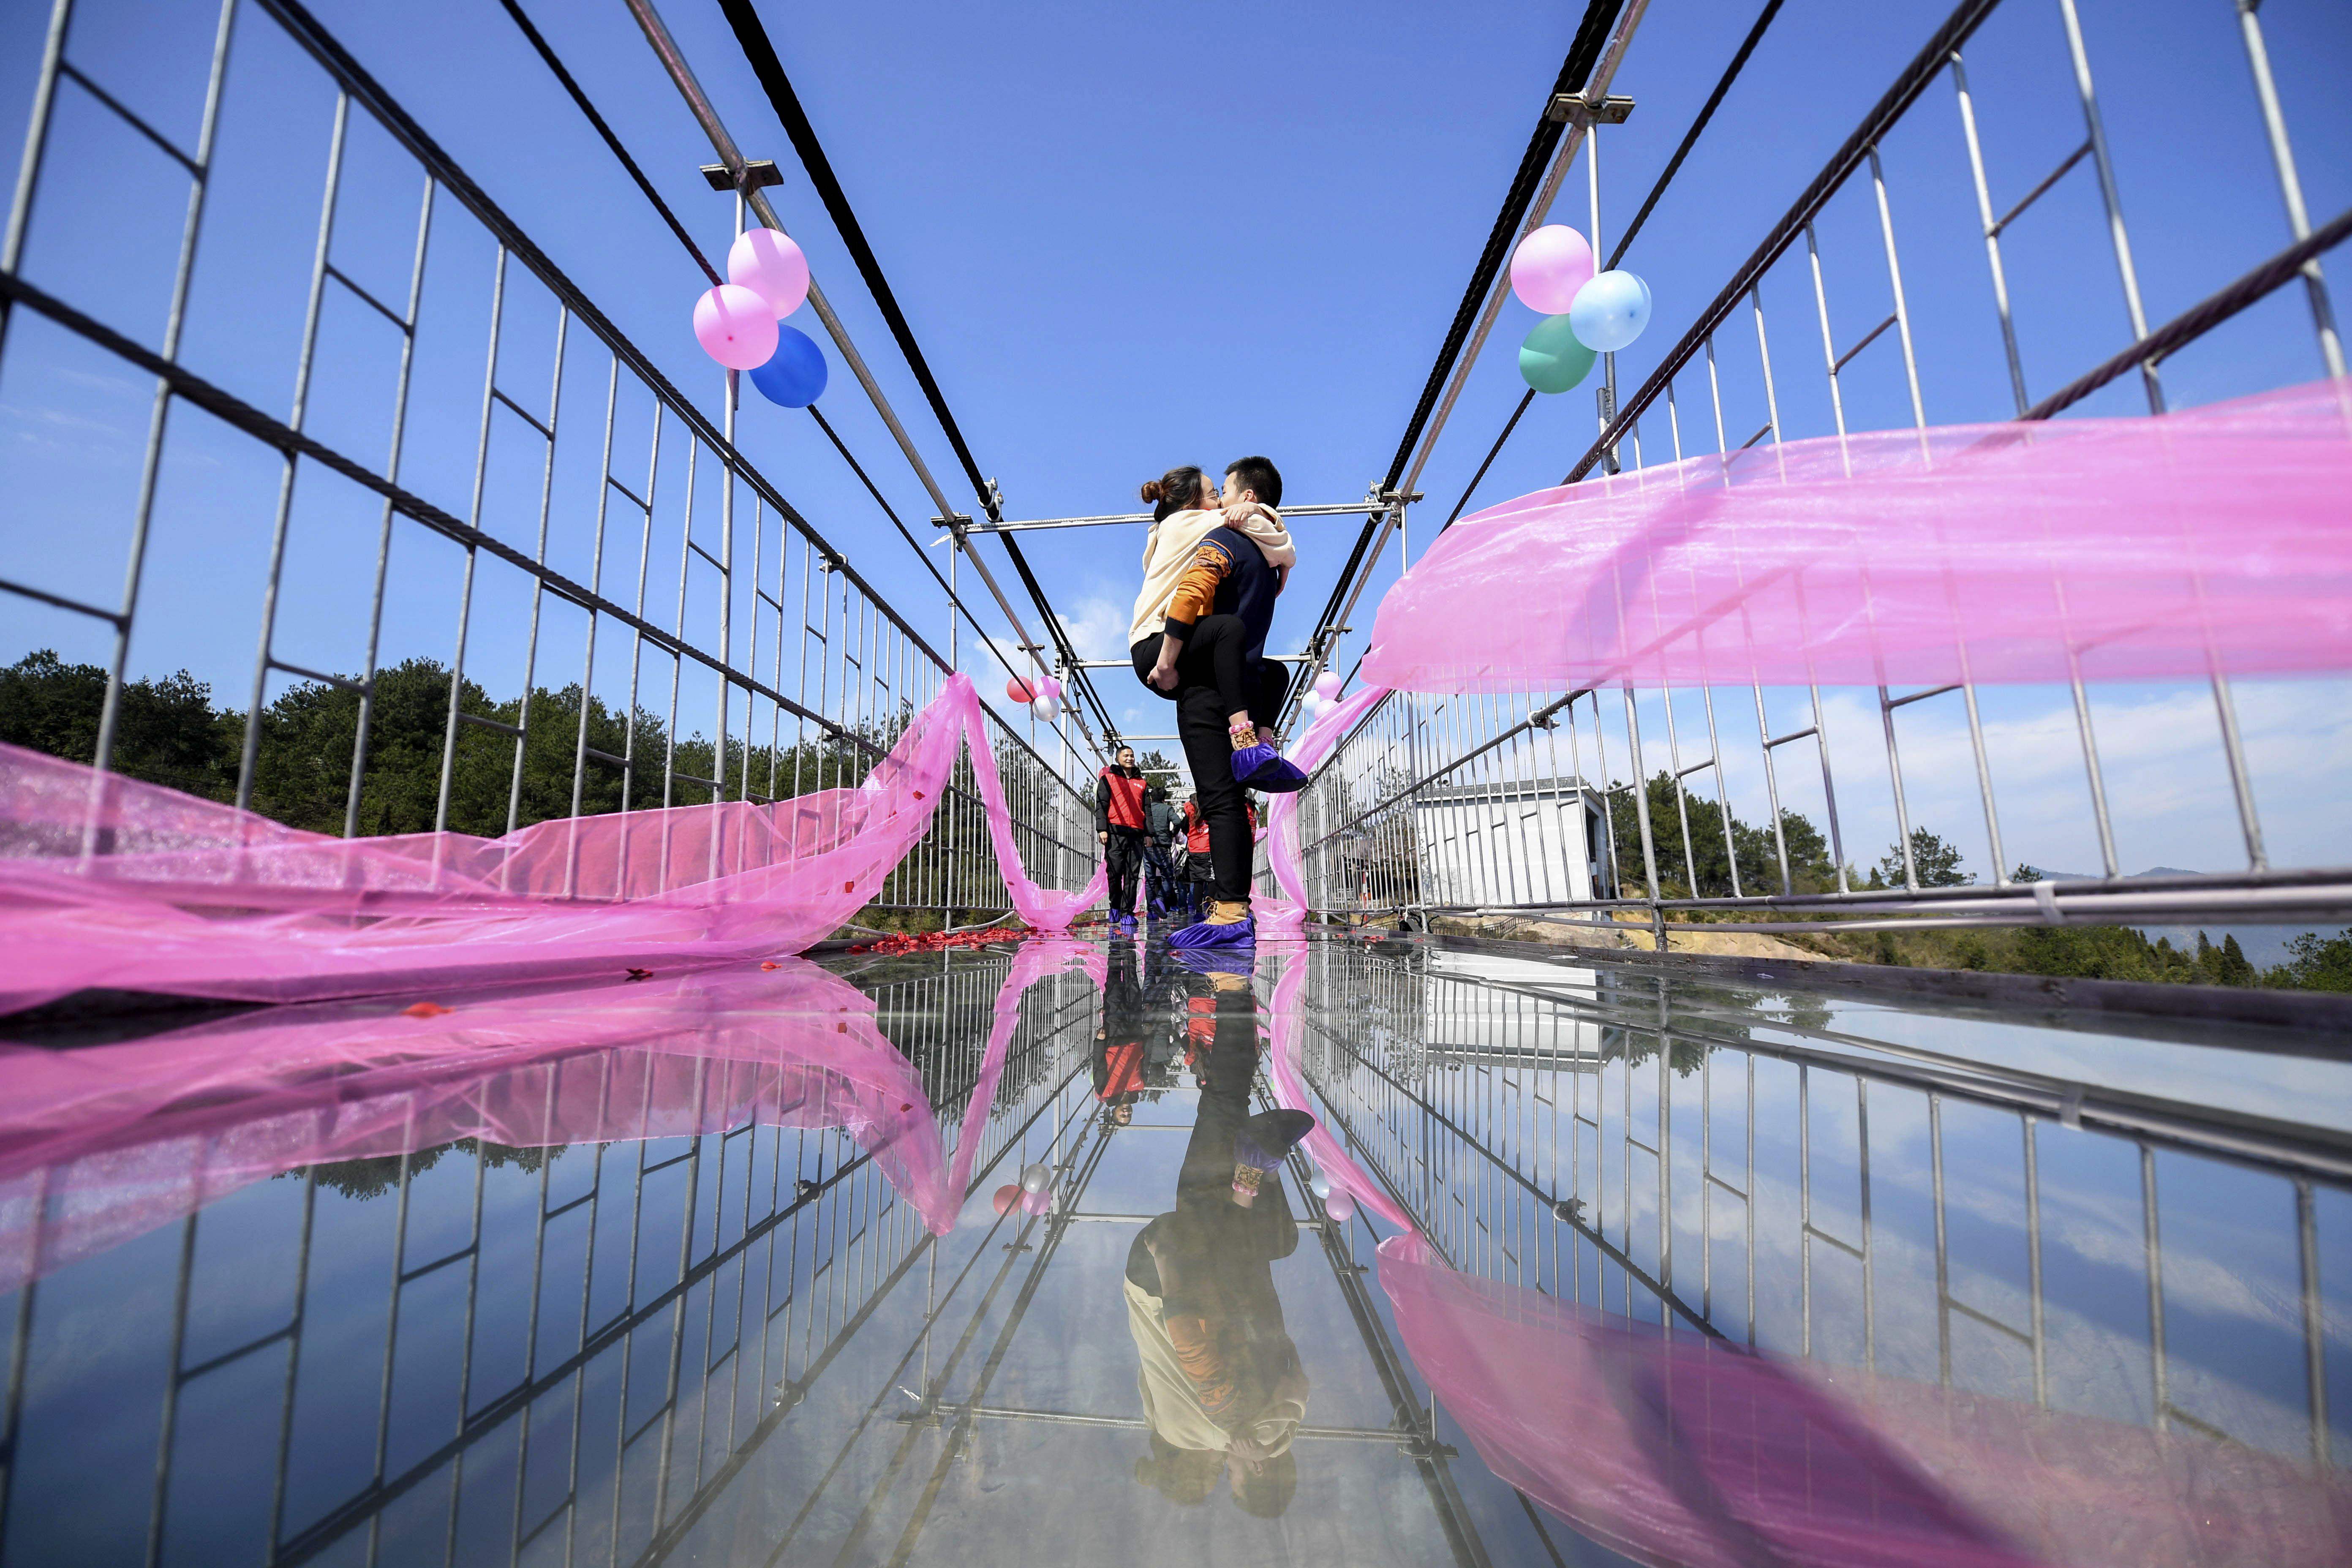 شاب يحمل حبيبته ويقبلها أعلى جسر زجاجى فى الصين بمناسبة عيد الحب